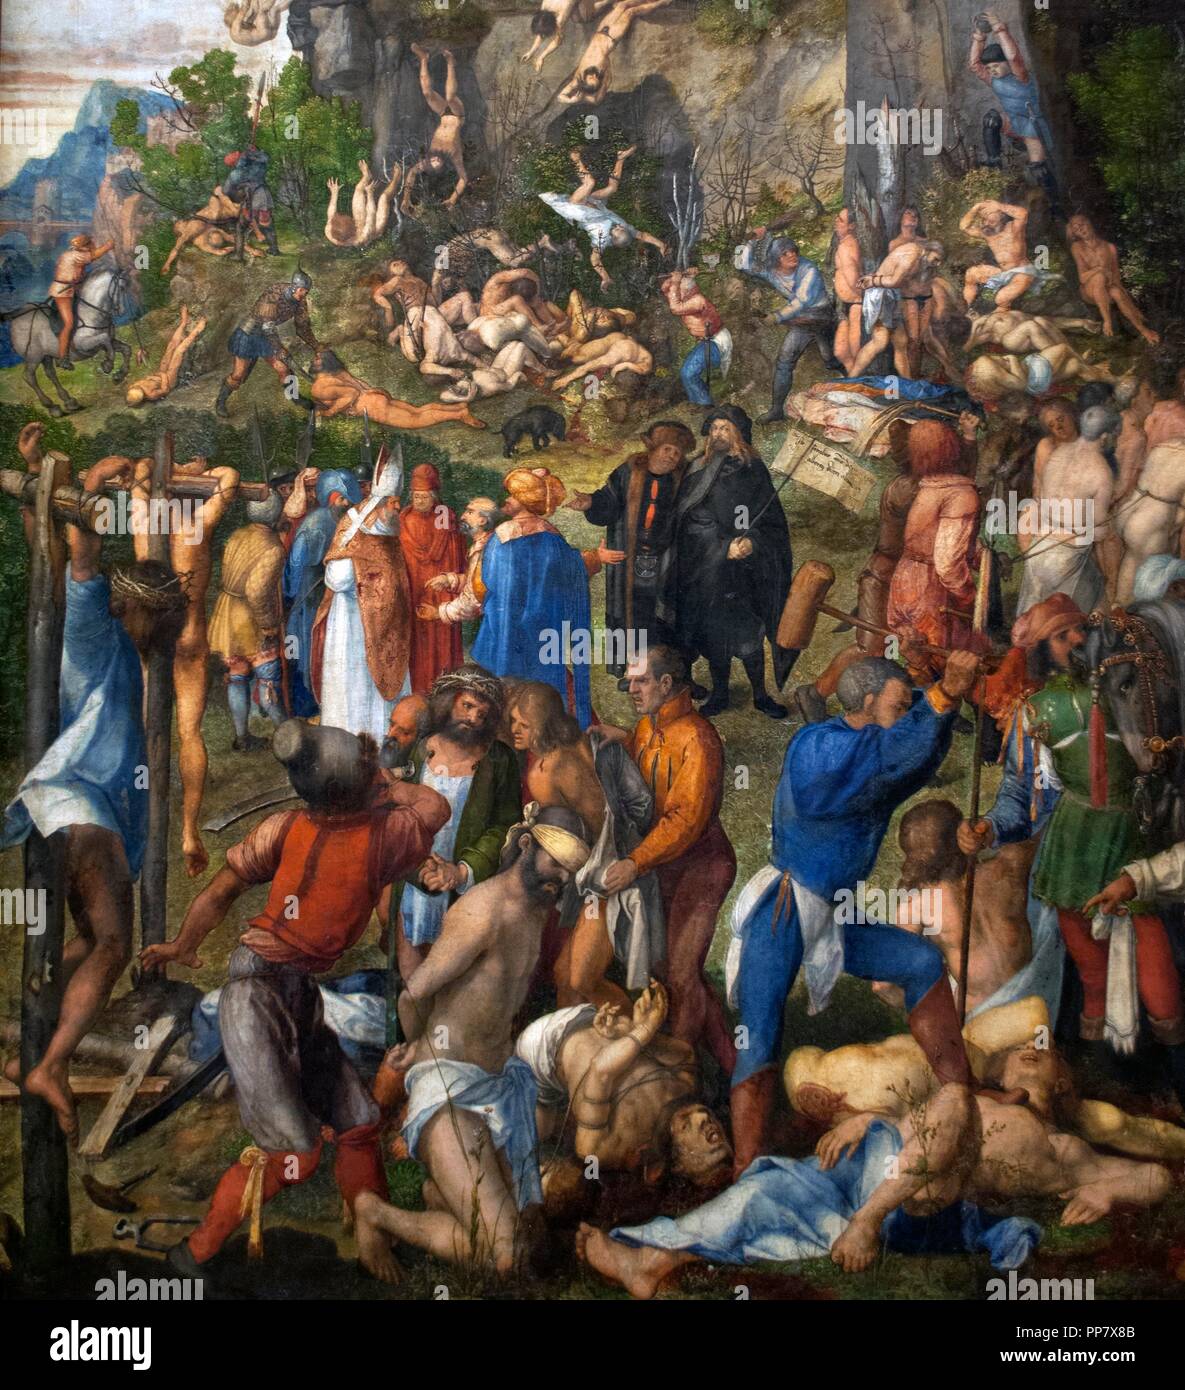 Albrecht Dürer (1471-1528). Deutsche Maler der Renaissance. Das martyrium  der Zehntausend, 1508. Kunst Museum der Geschichte. Wien. Österreich  Stockfotografie - Alamy